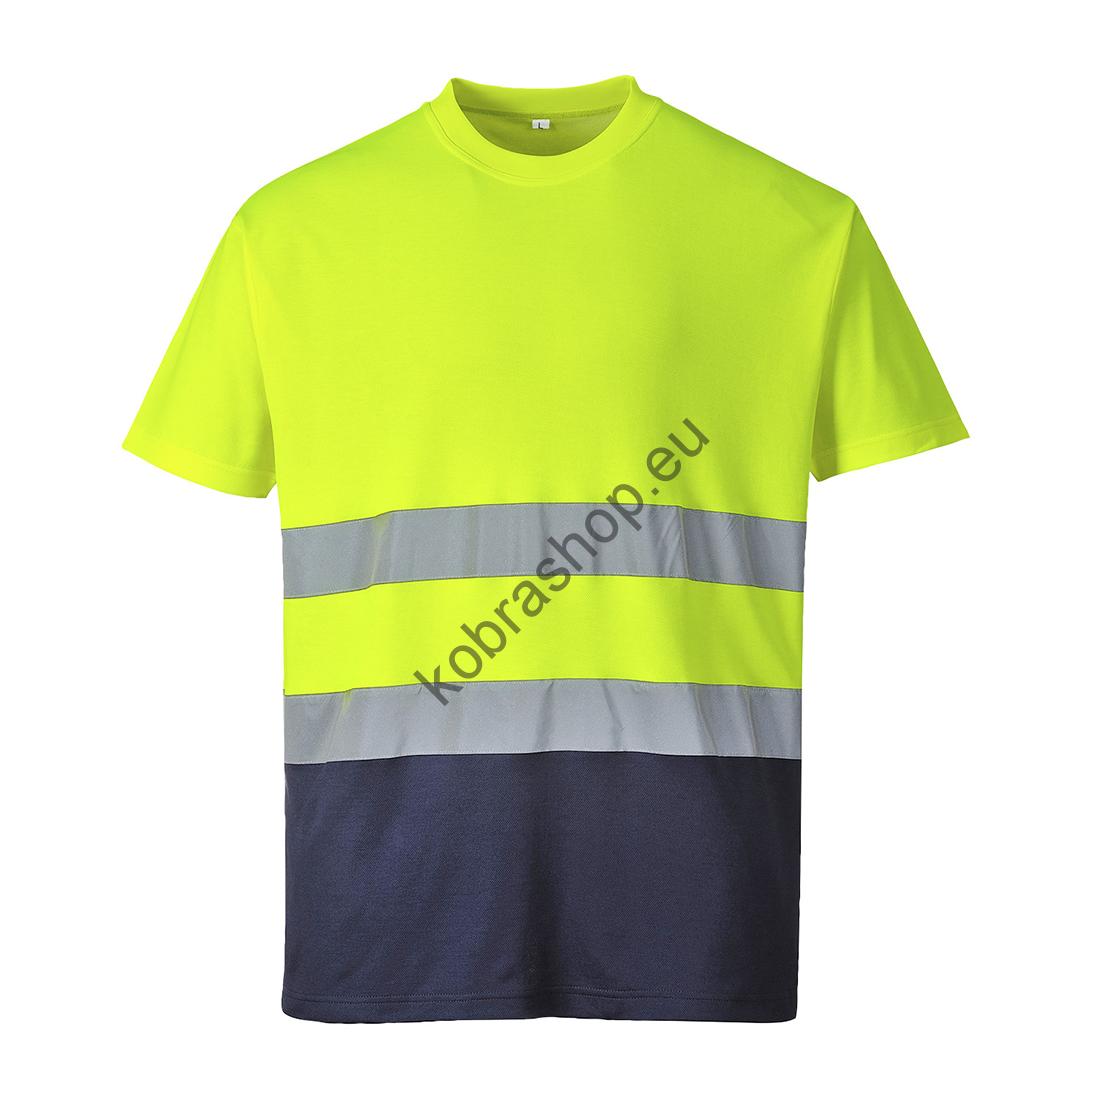 S173 - Tričko Comfort Žltá/tm.modrá